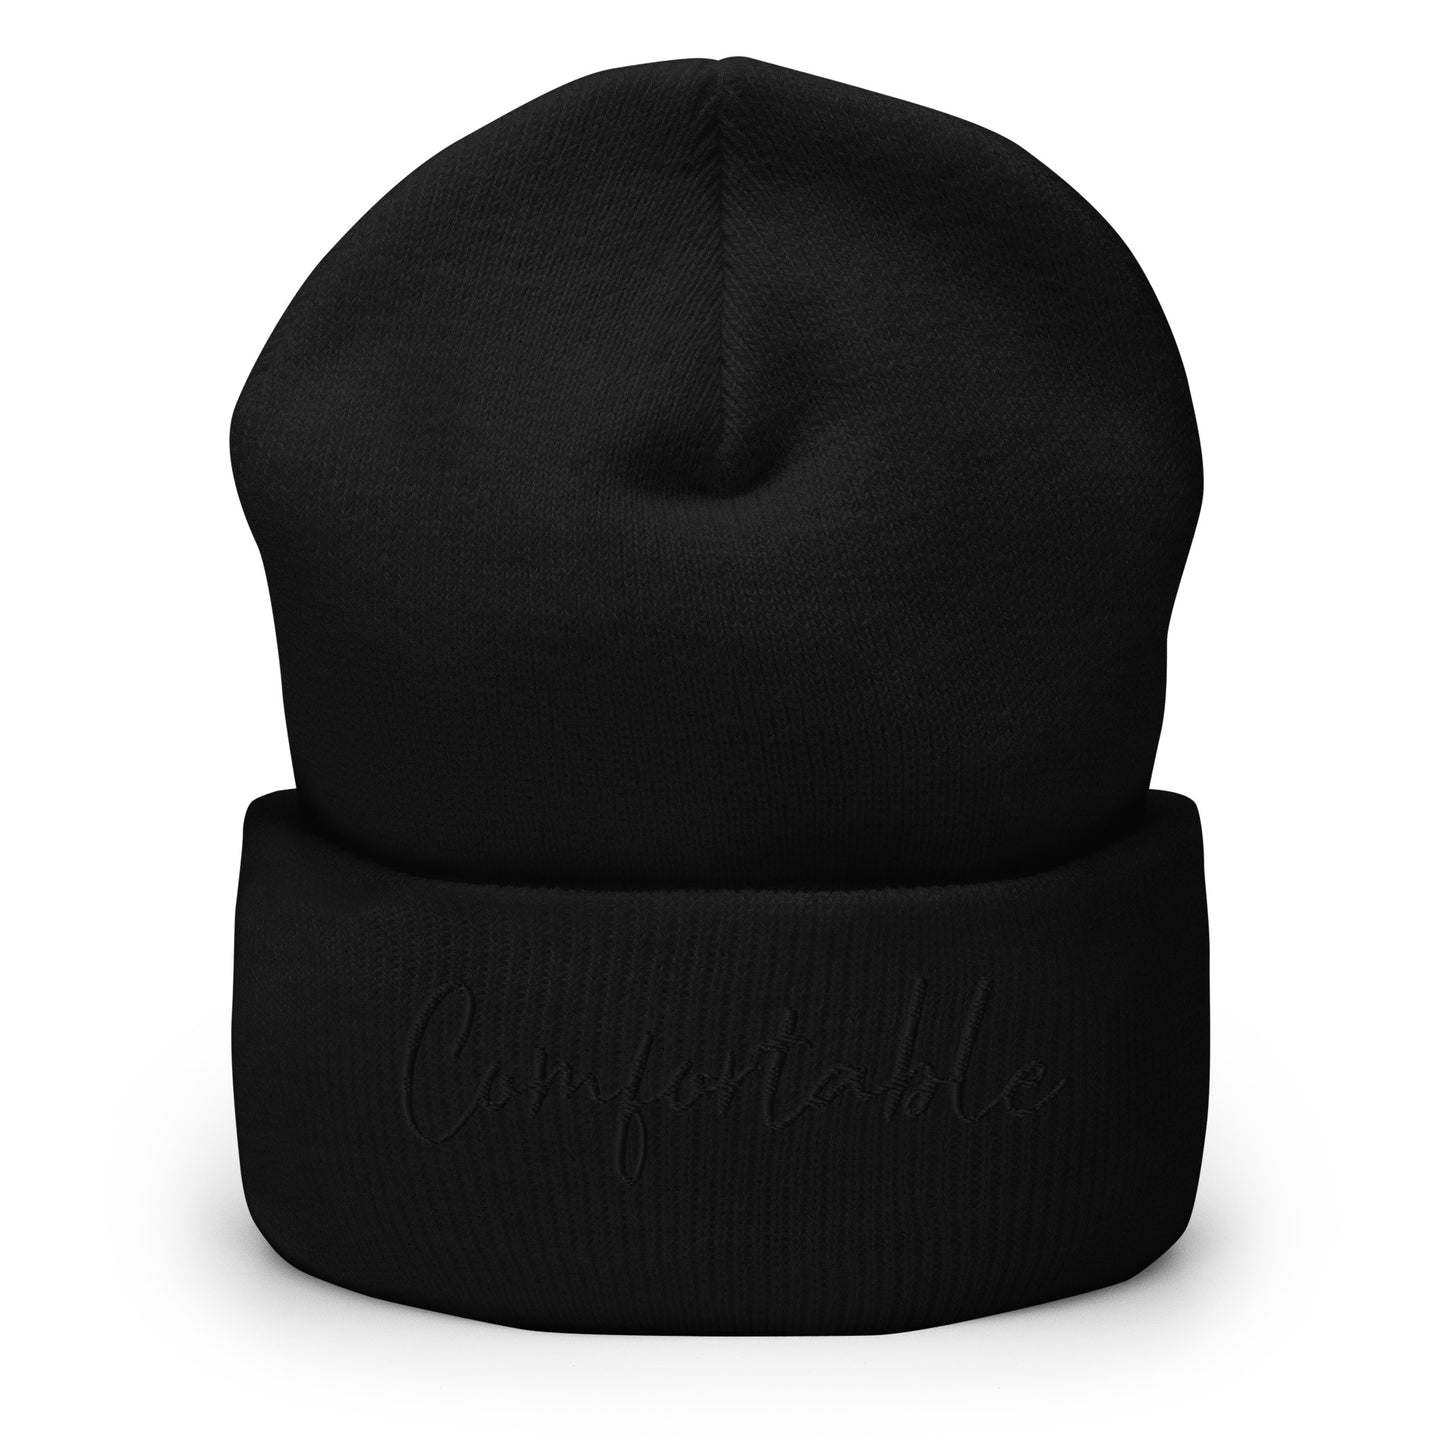 "Comfortable" Cuffed Beanie (Black Text) - Comfortable Culture - Hats - Comfortable Culture